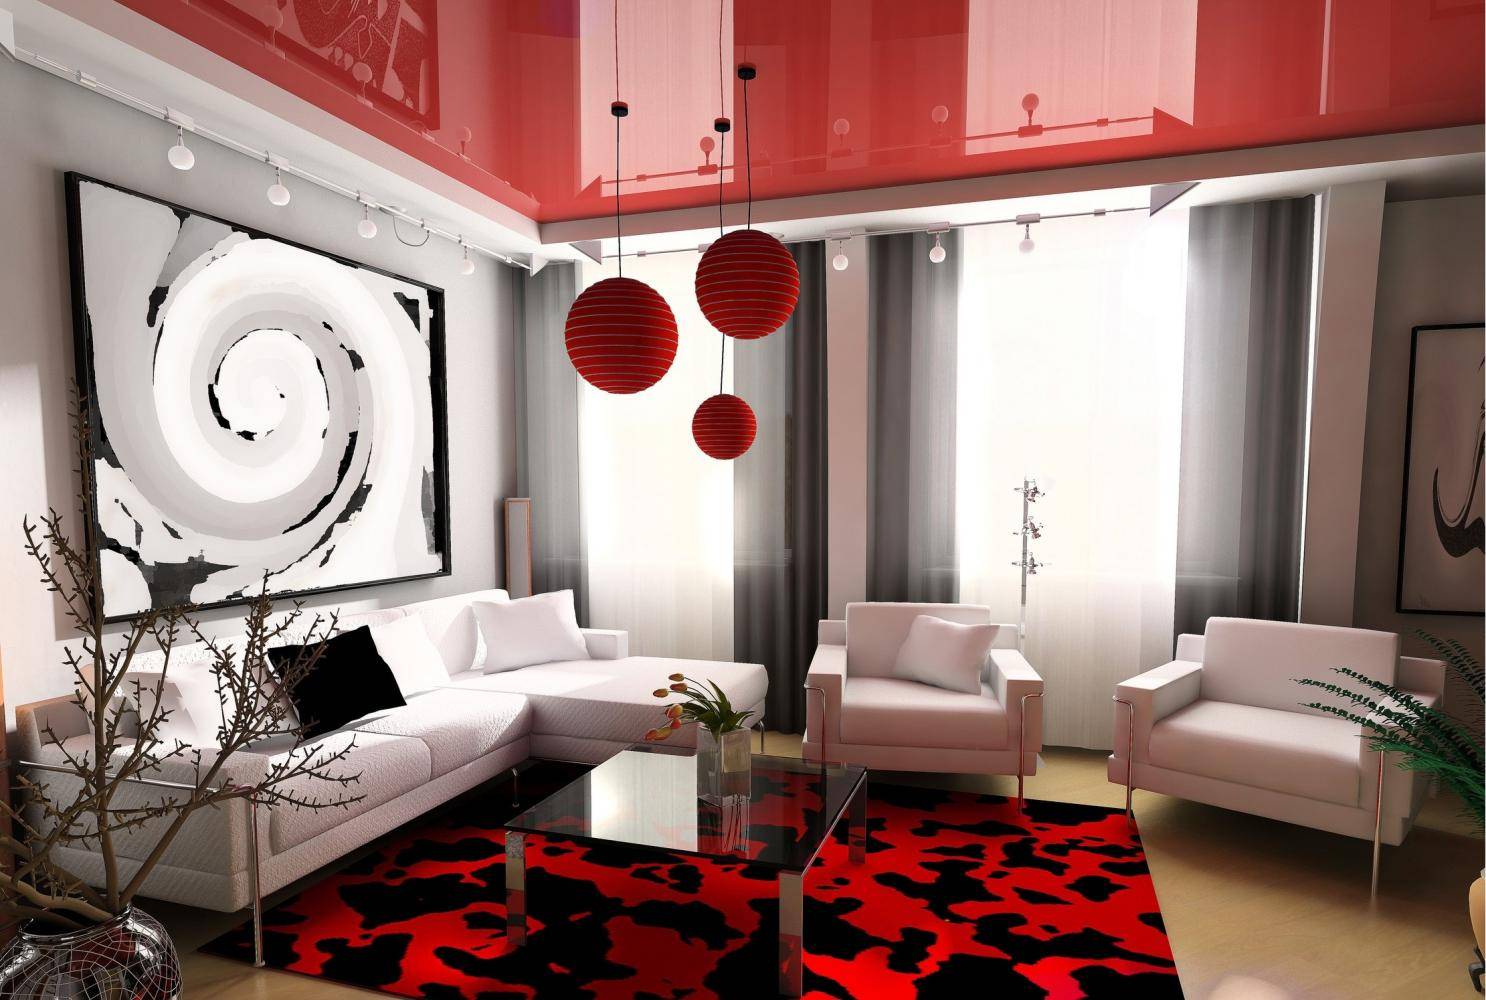 Зал 18 кв. м.: подбор интерьера комнаты для создания домашнего уюта и комфорта (125 фото)